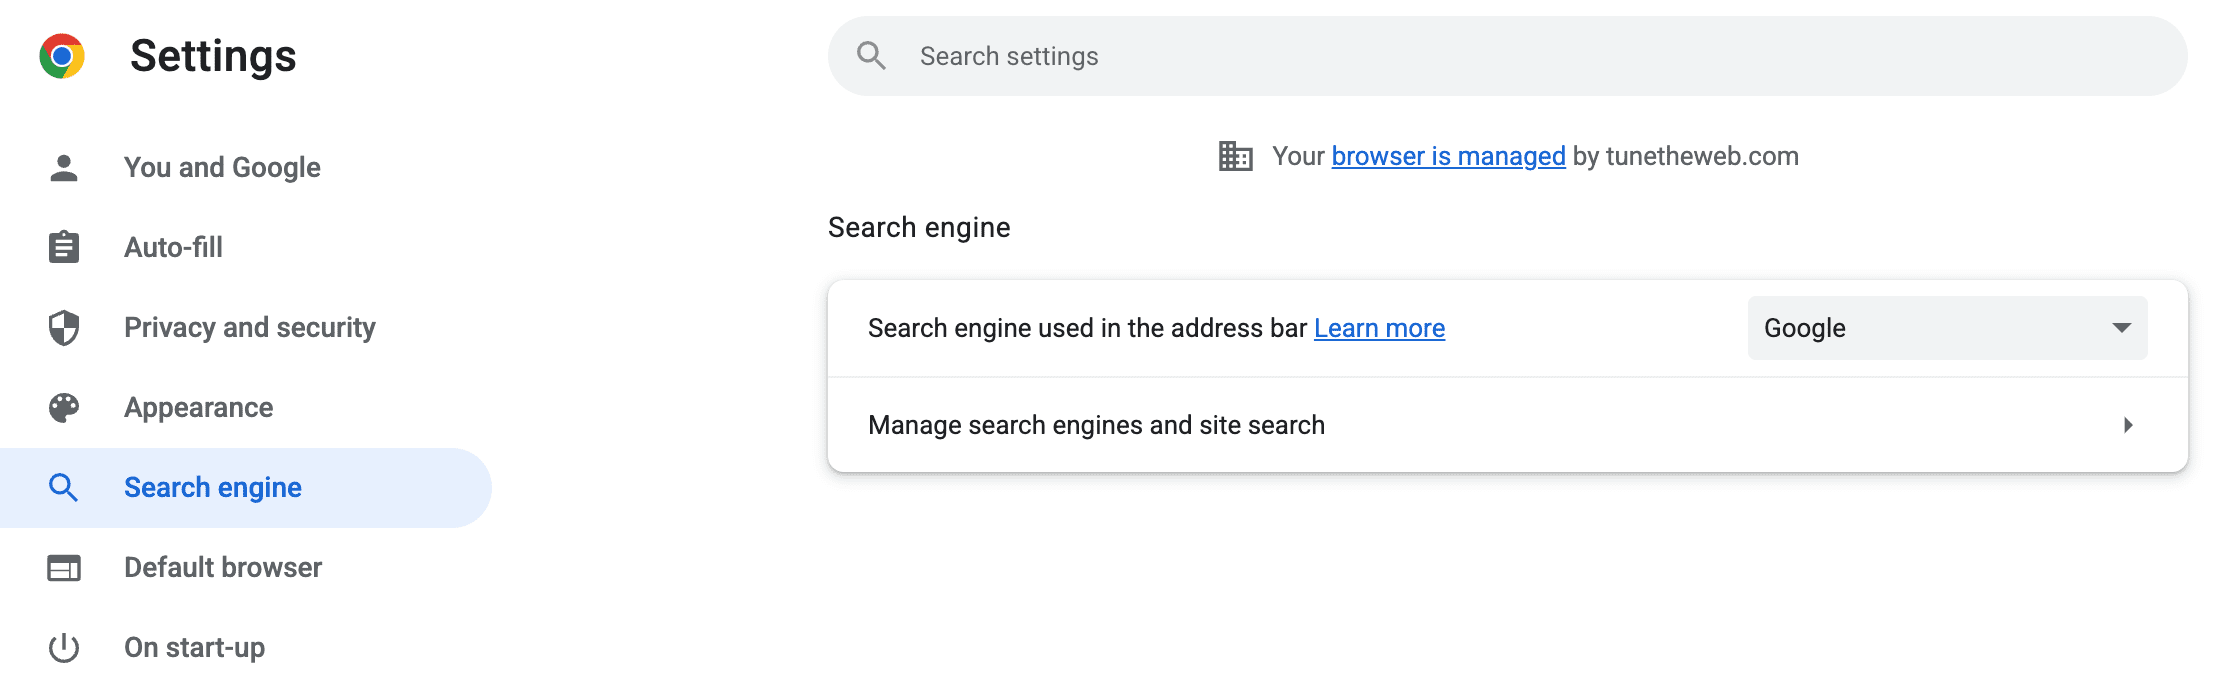 「搜尋引擎」的 Chrome 設定螢幕截圖，「管理搜尋引擎和網站搜尋」頁面